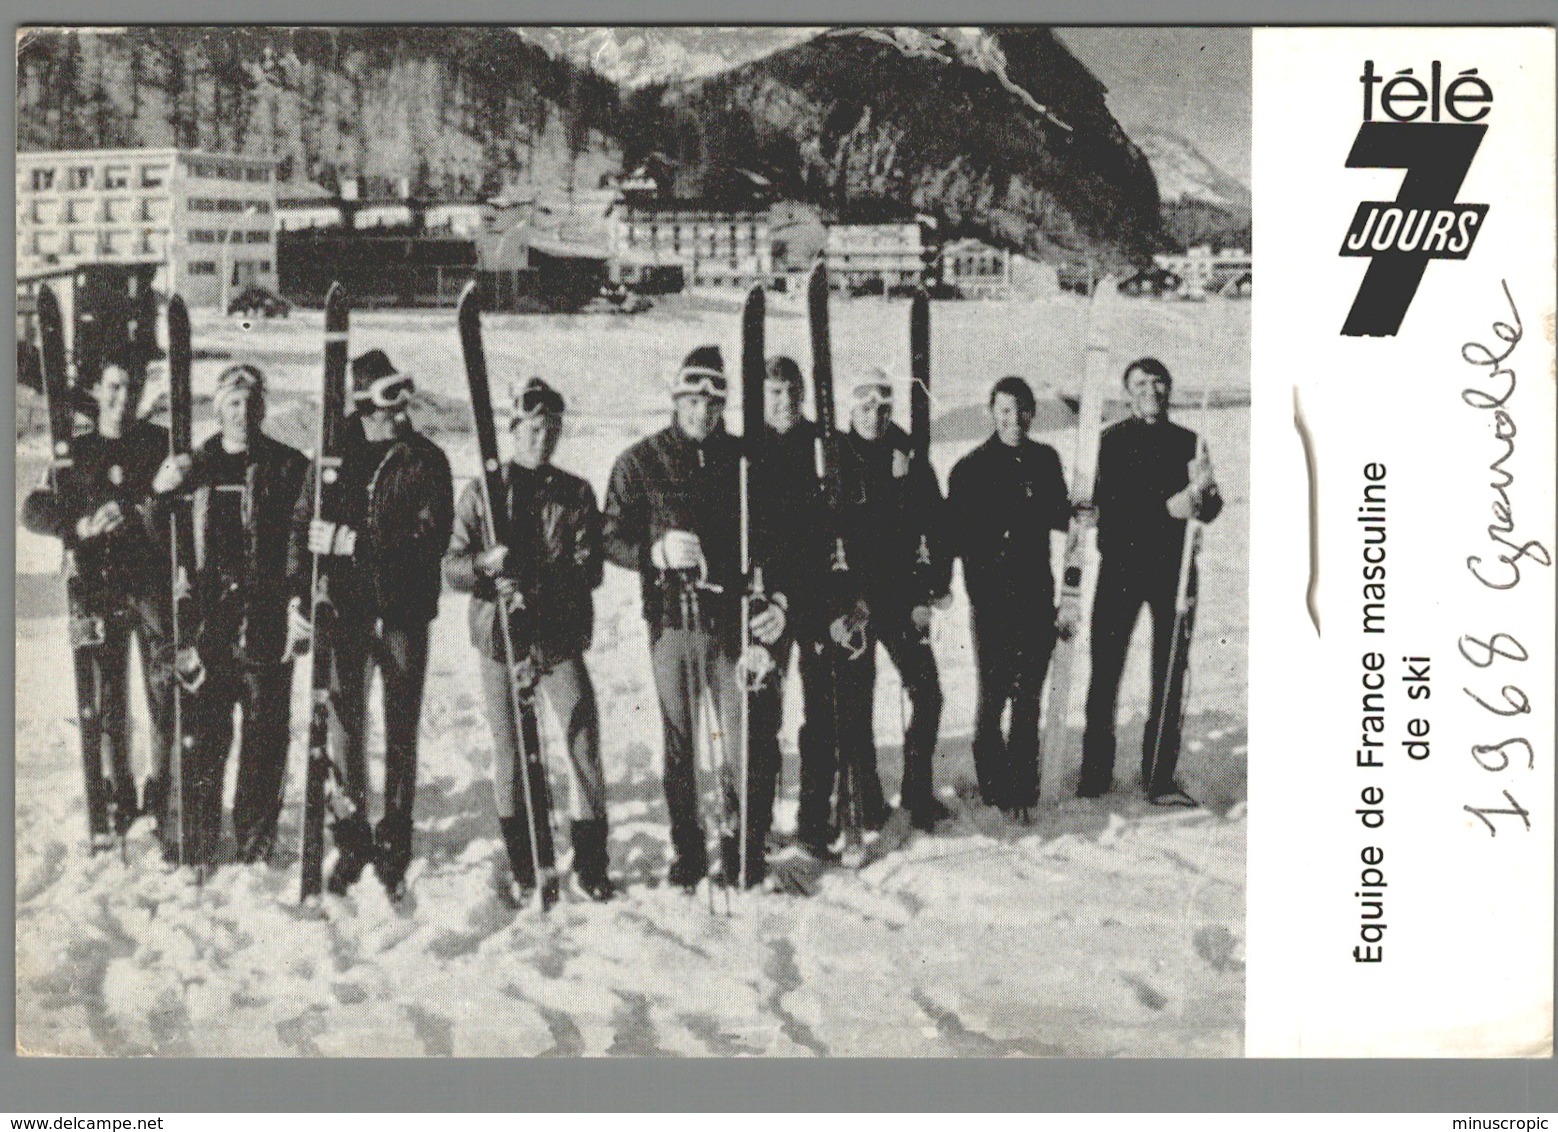 Télé 7 Jours - Equipe De France Masculine De Ski - 1968 - Sports D'hiver